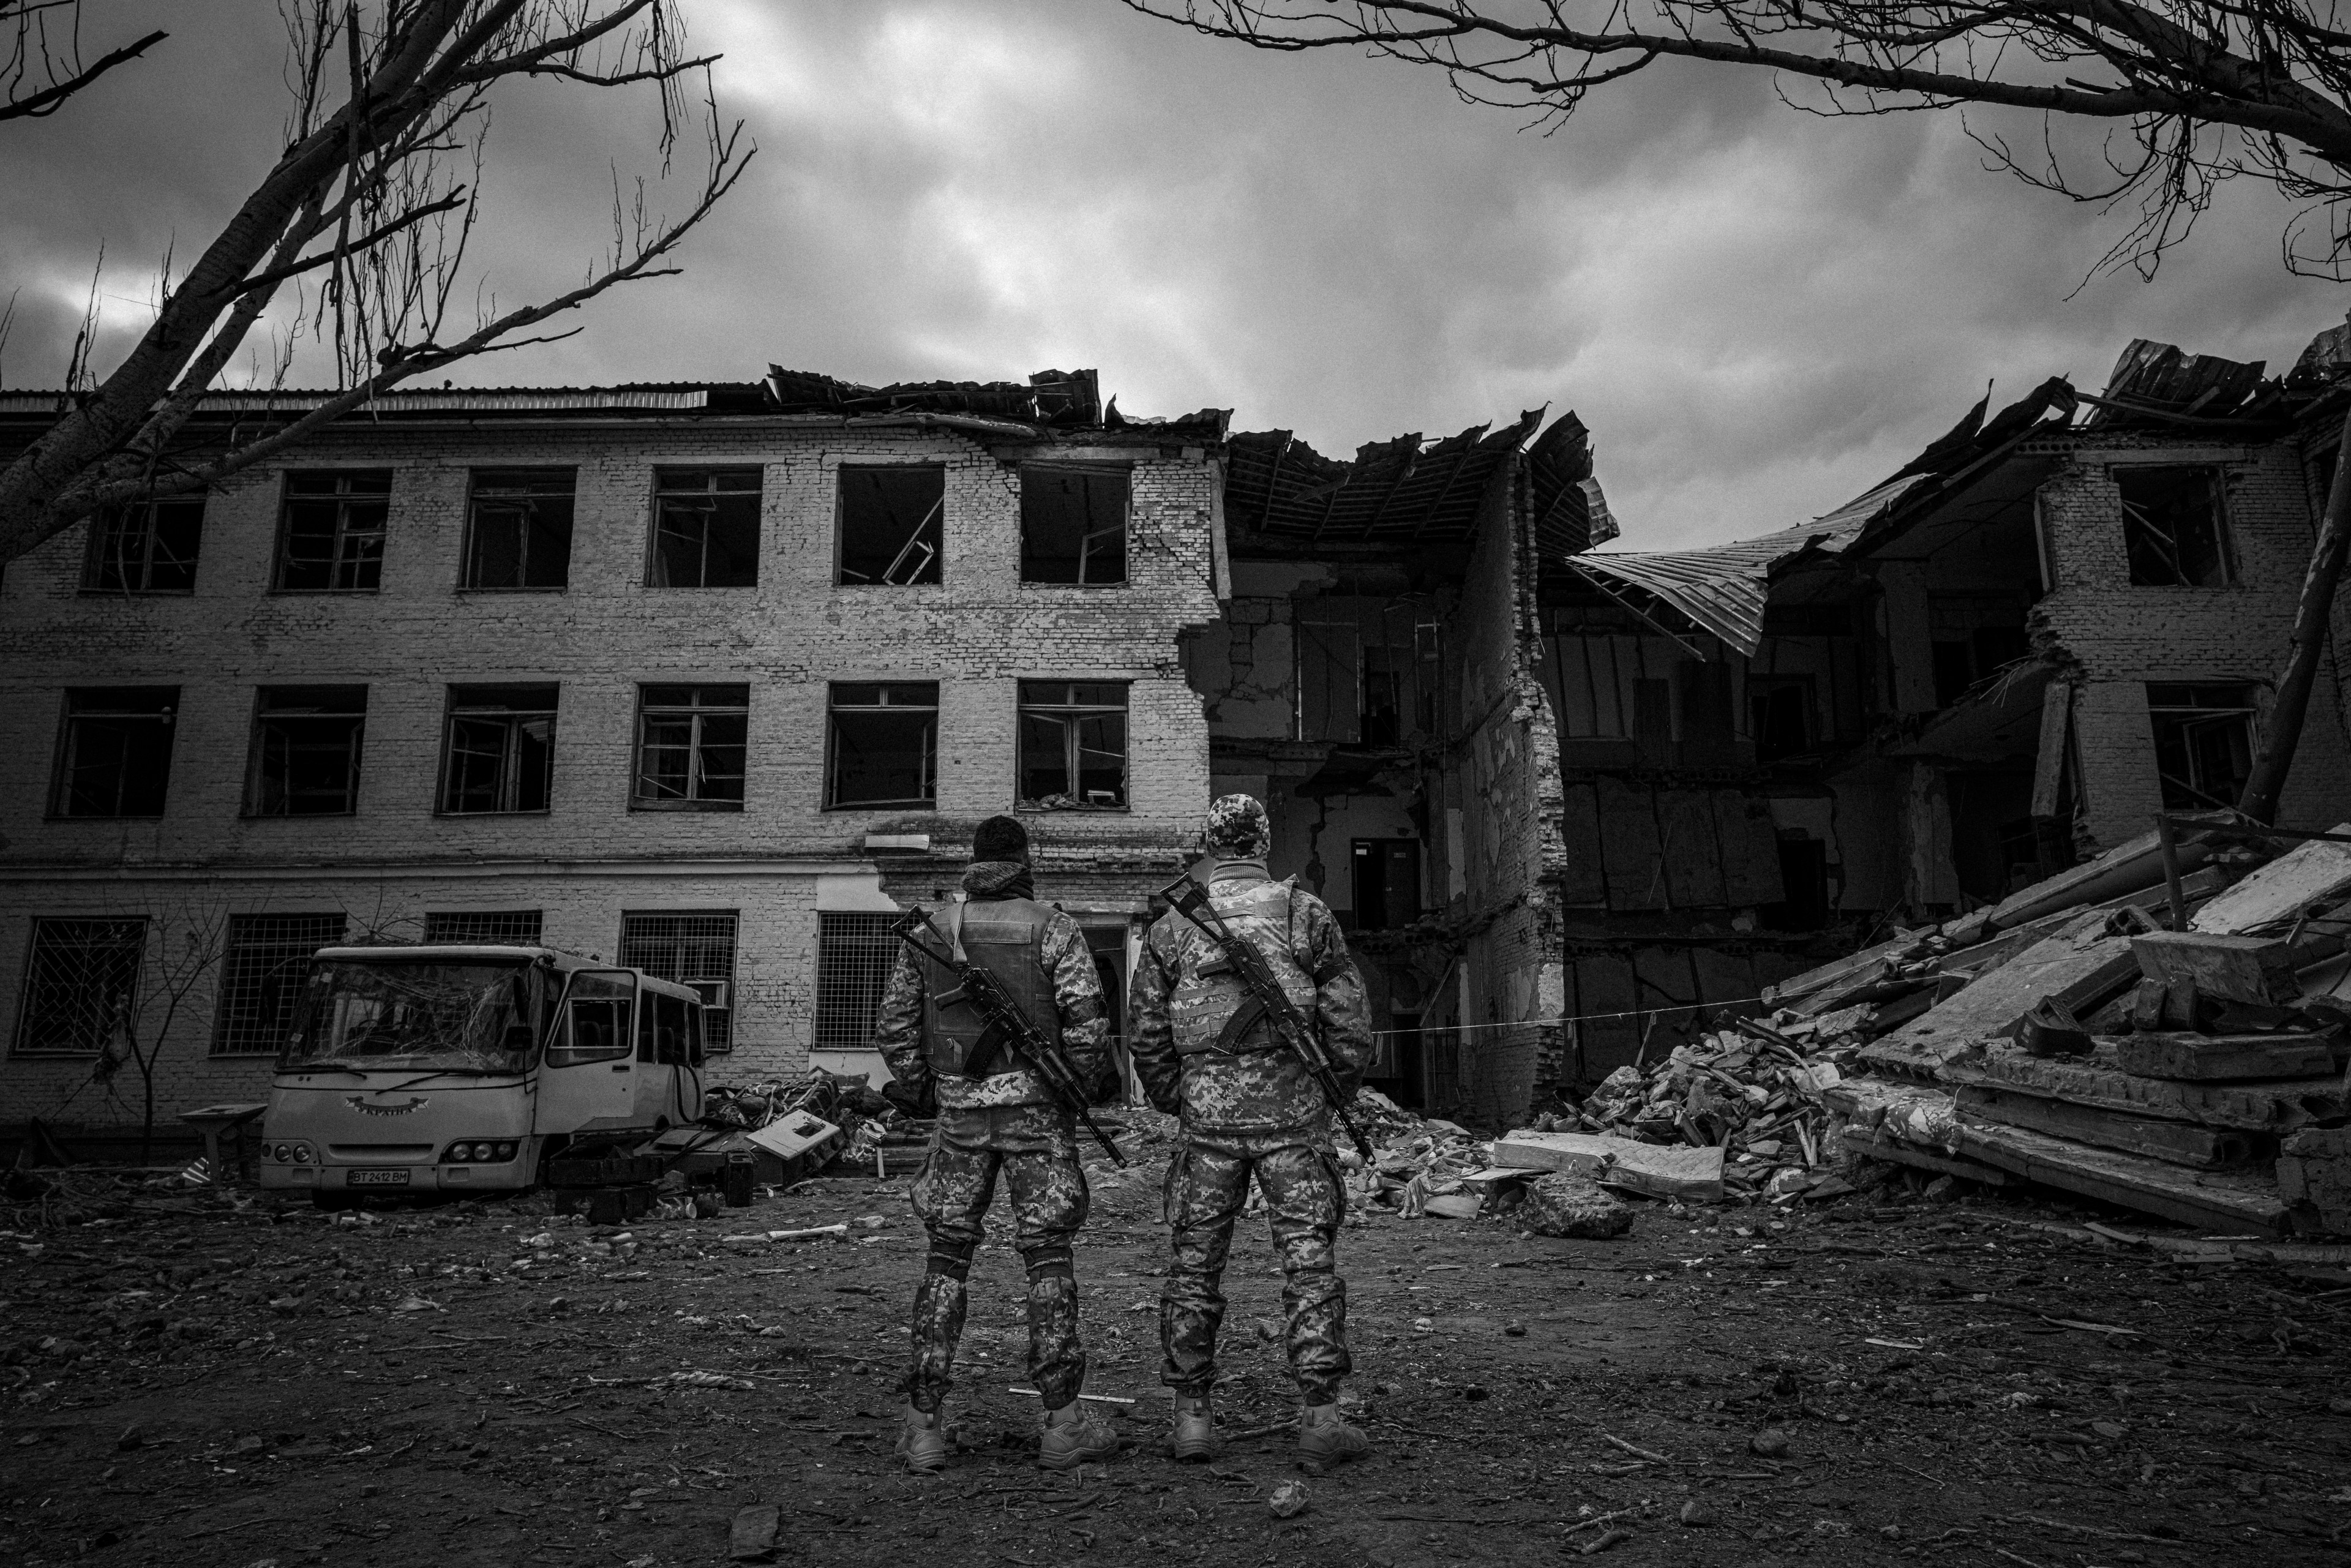 Dua prajurit berdiri menghadap pangkalan militer yang hancur akibat bom.